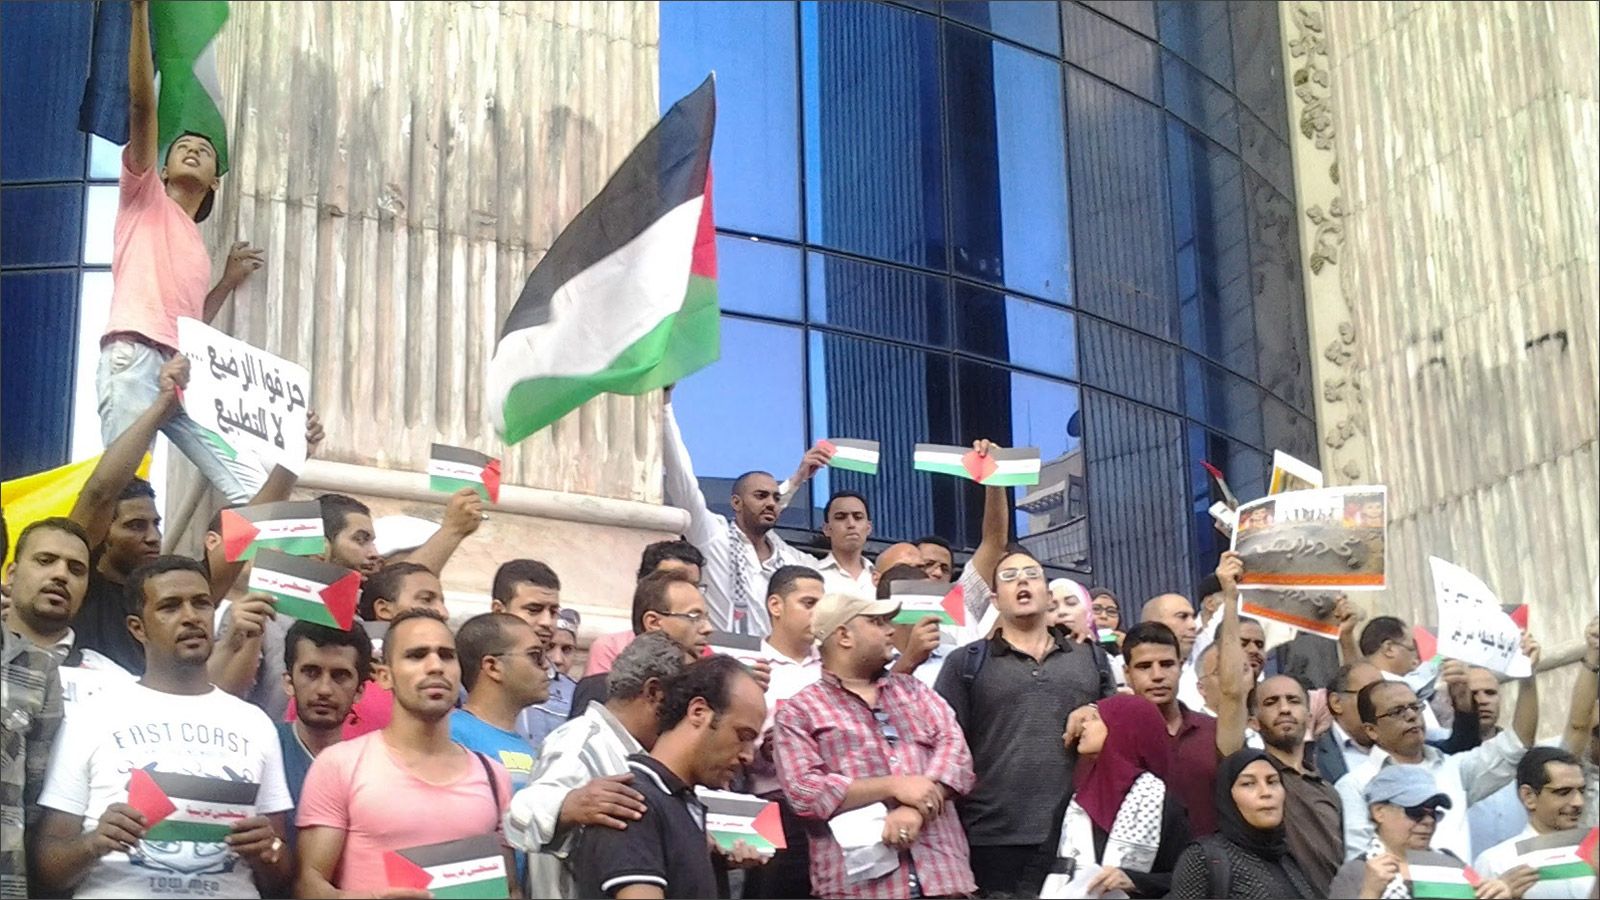 التظاهر بالشوارع المصرية دعما للفلسطينيين لم يعد ممكنا منذ أن وصل السيسي إلى السلطة (الجزيرة)